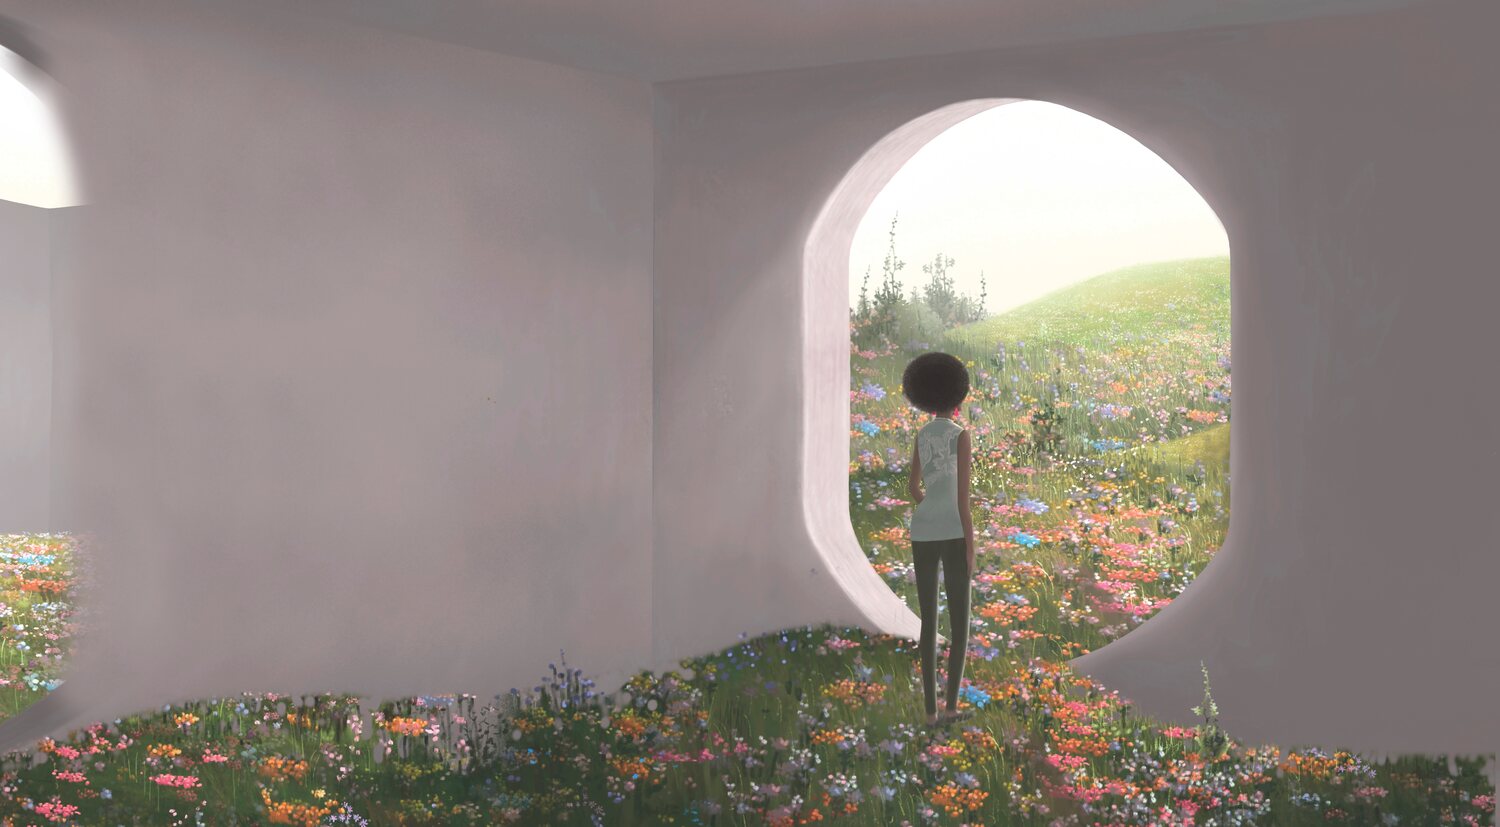 psychedelic illustration of woman standing in doorway in garden